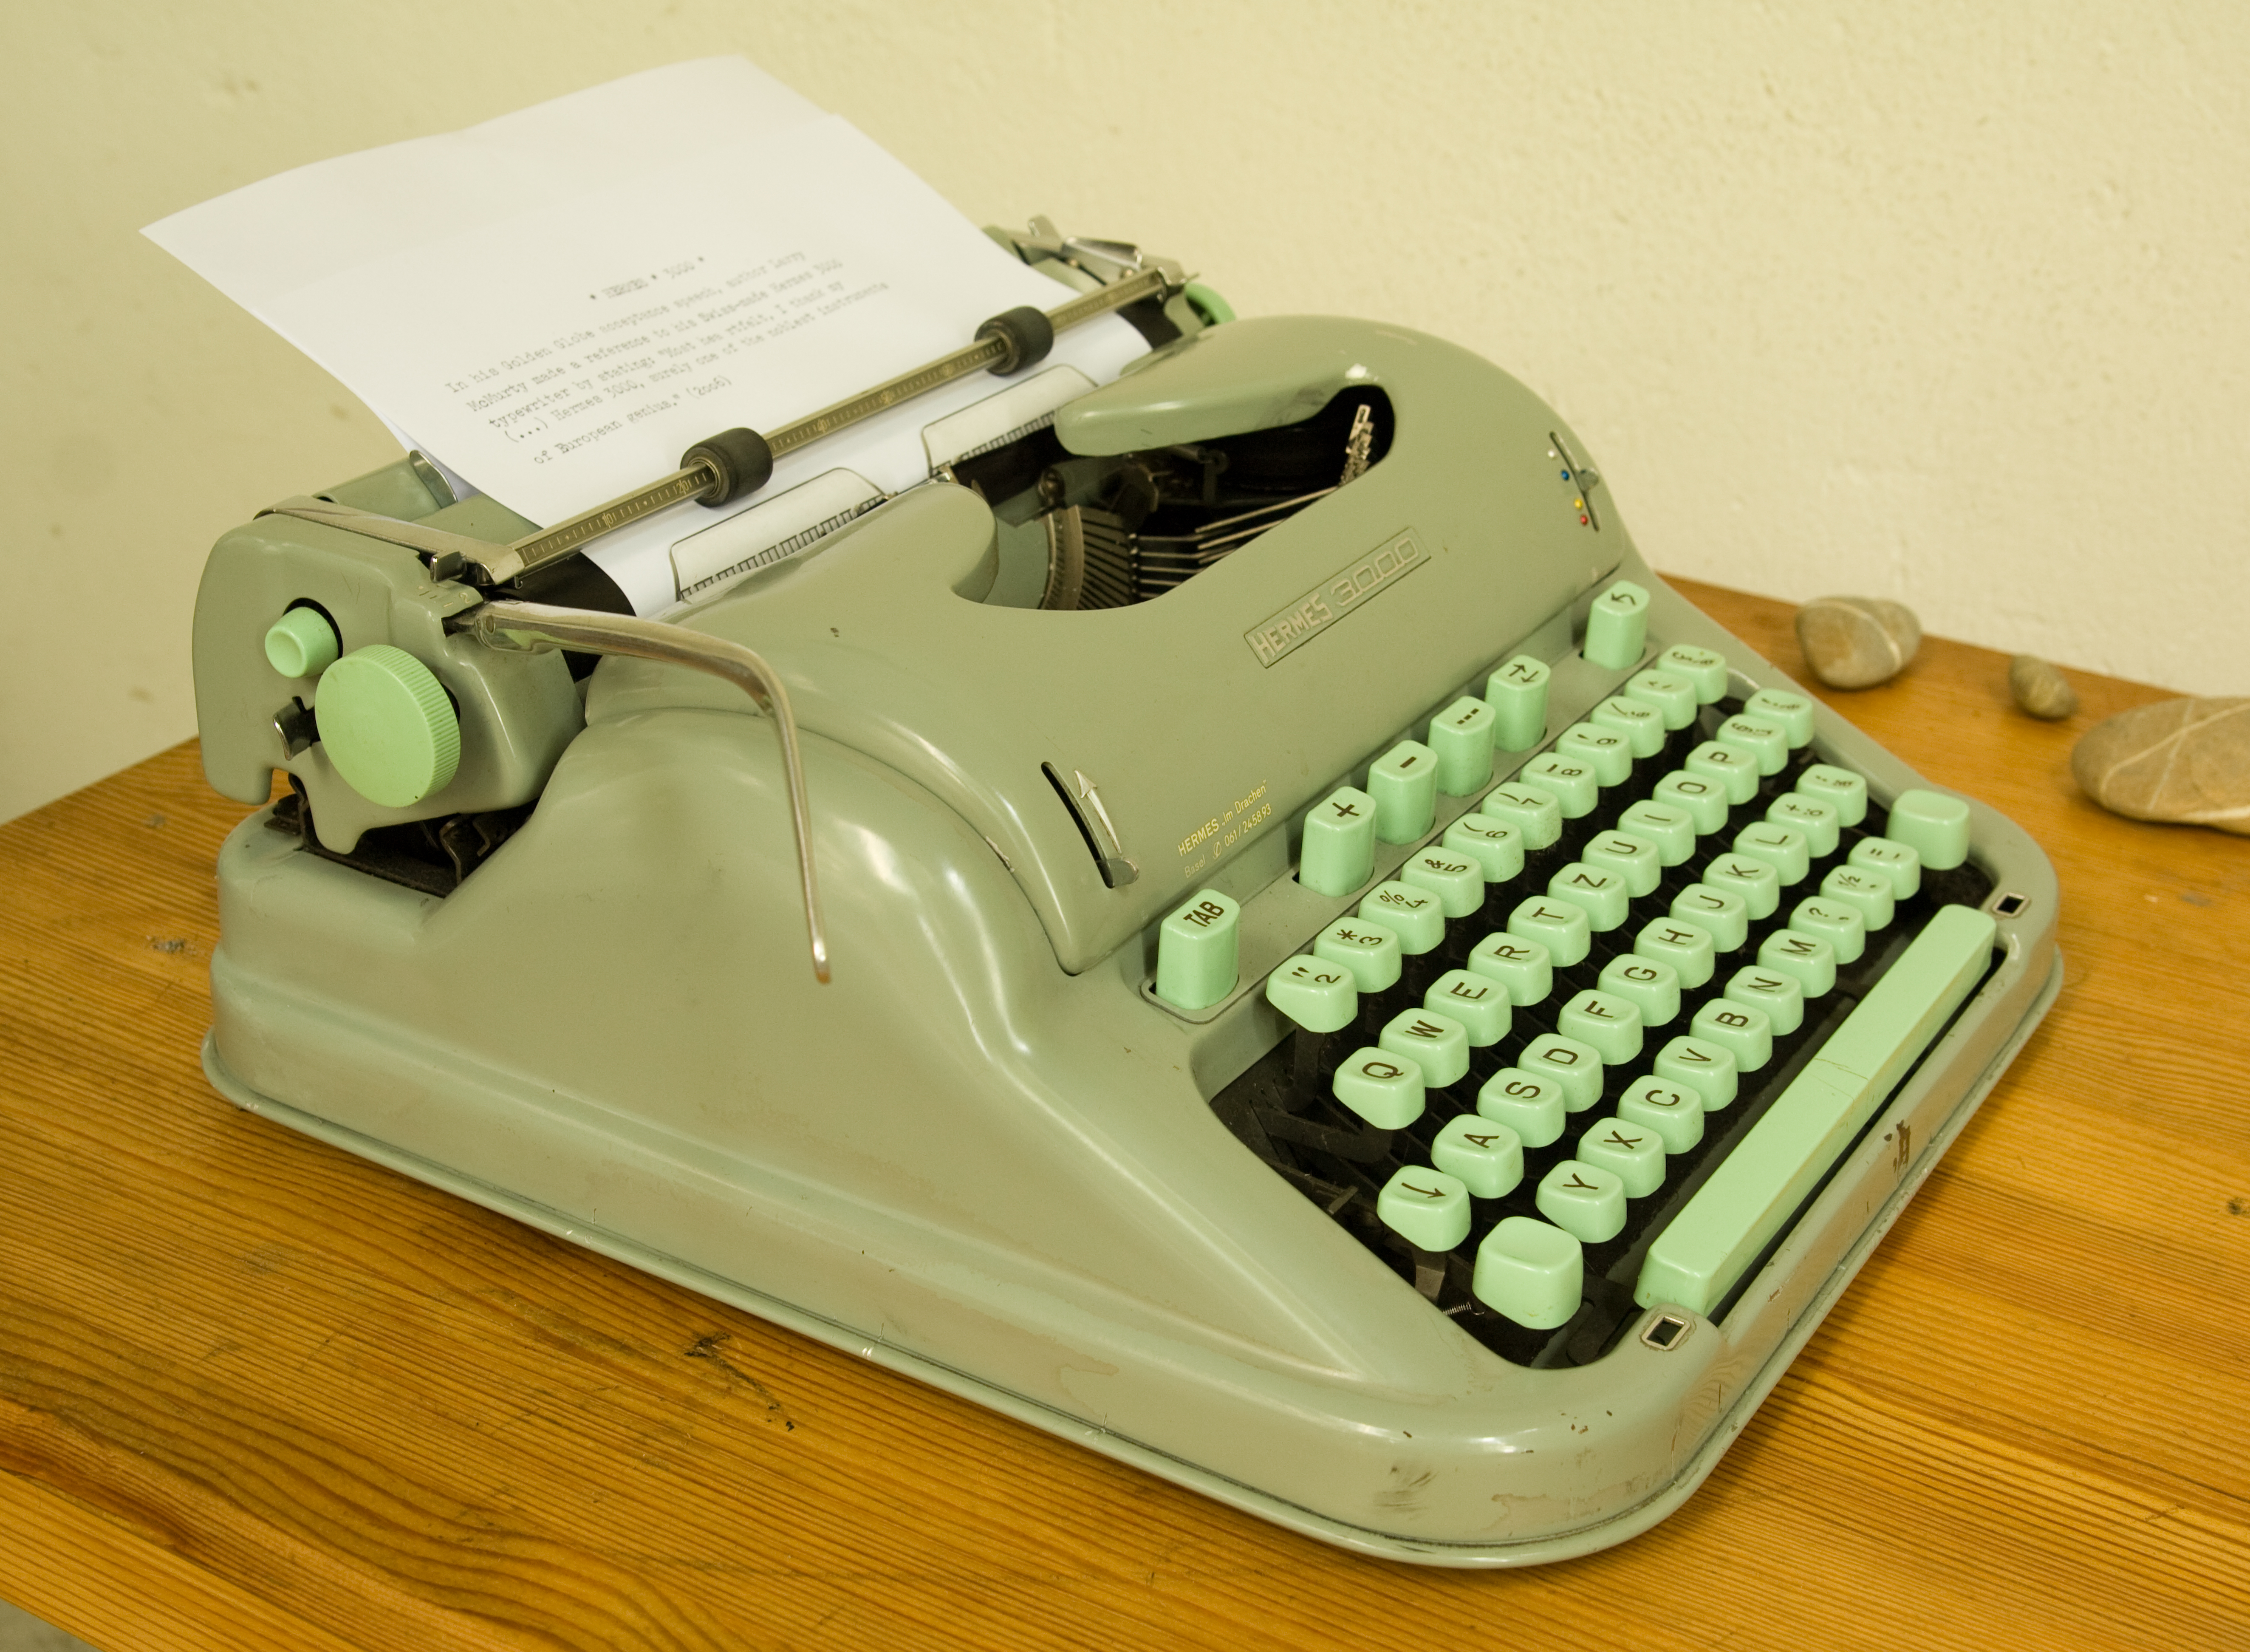 Hermes_3000_typewriter